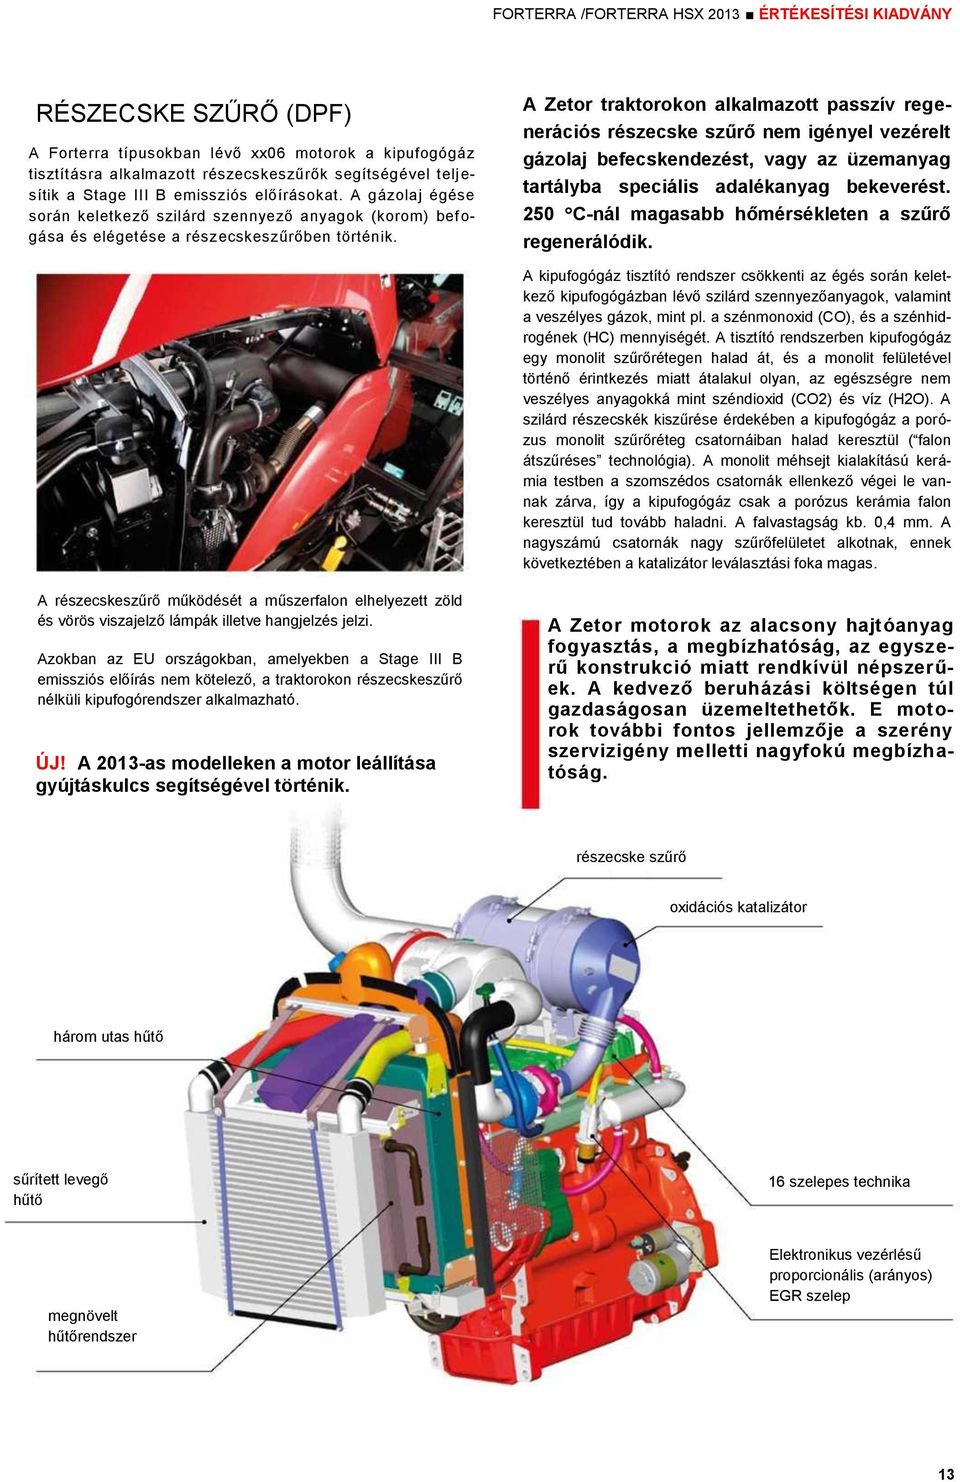 A Zetor traktorokon alkalmazott passzív regenerációs részecske szűrő nem igényel vezérelt gázolaj befecskendezést, vagy az üzemanyag tartályba speciális adalékanyag bekeverést.